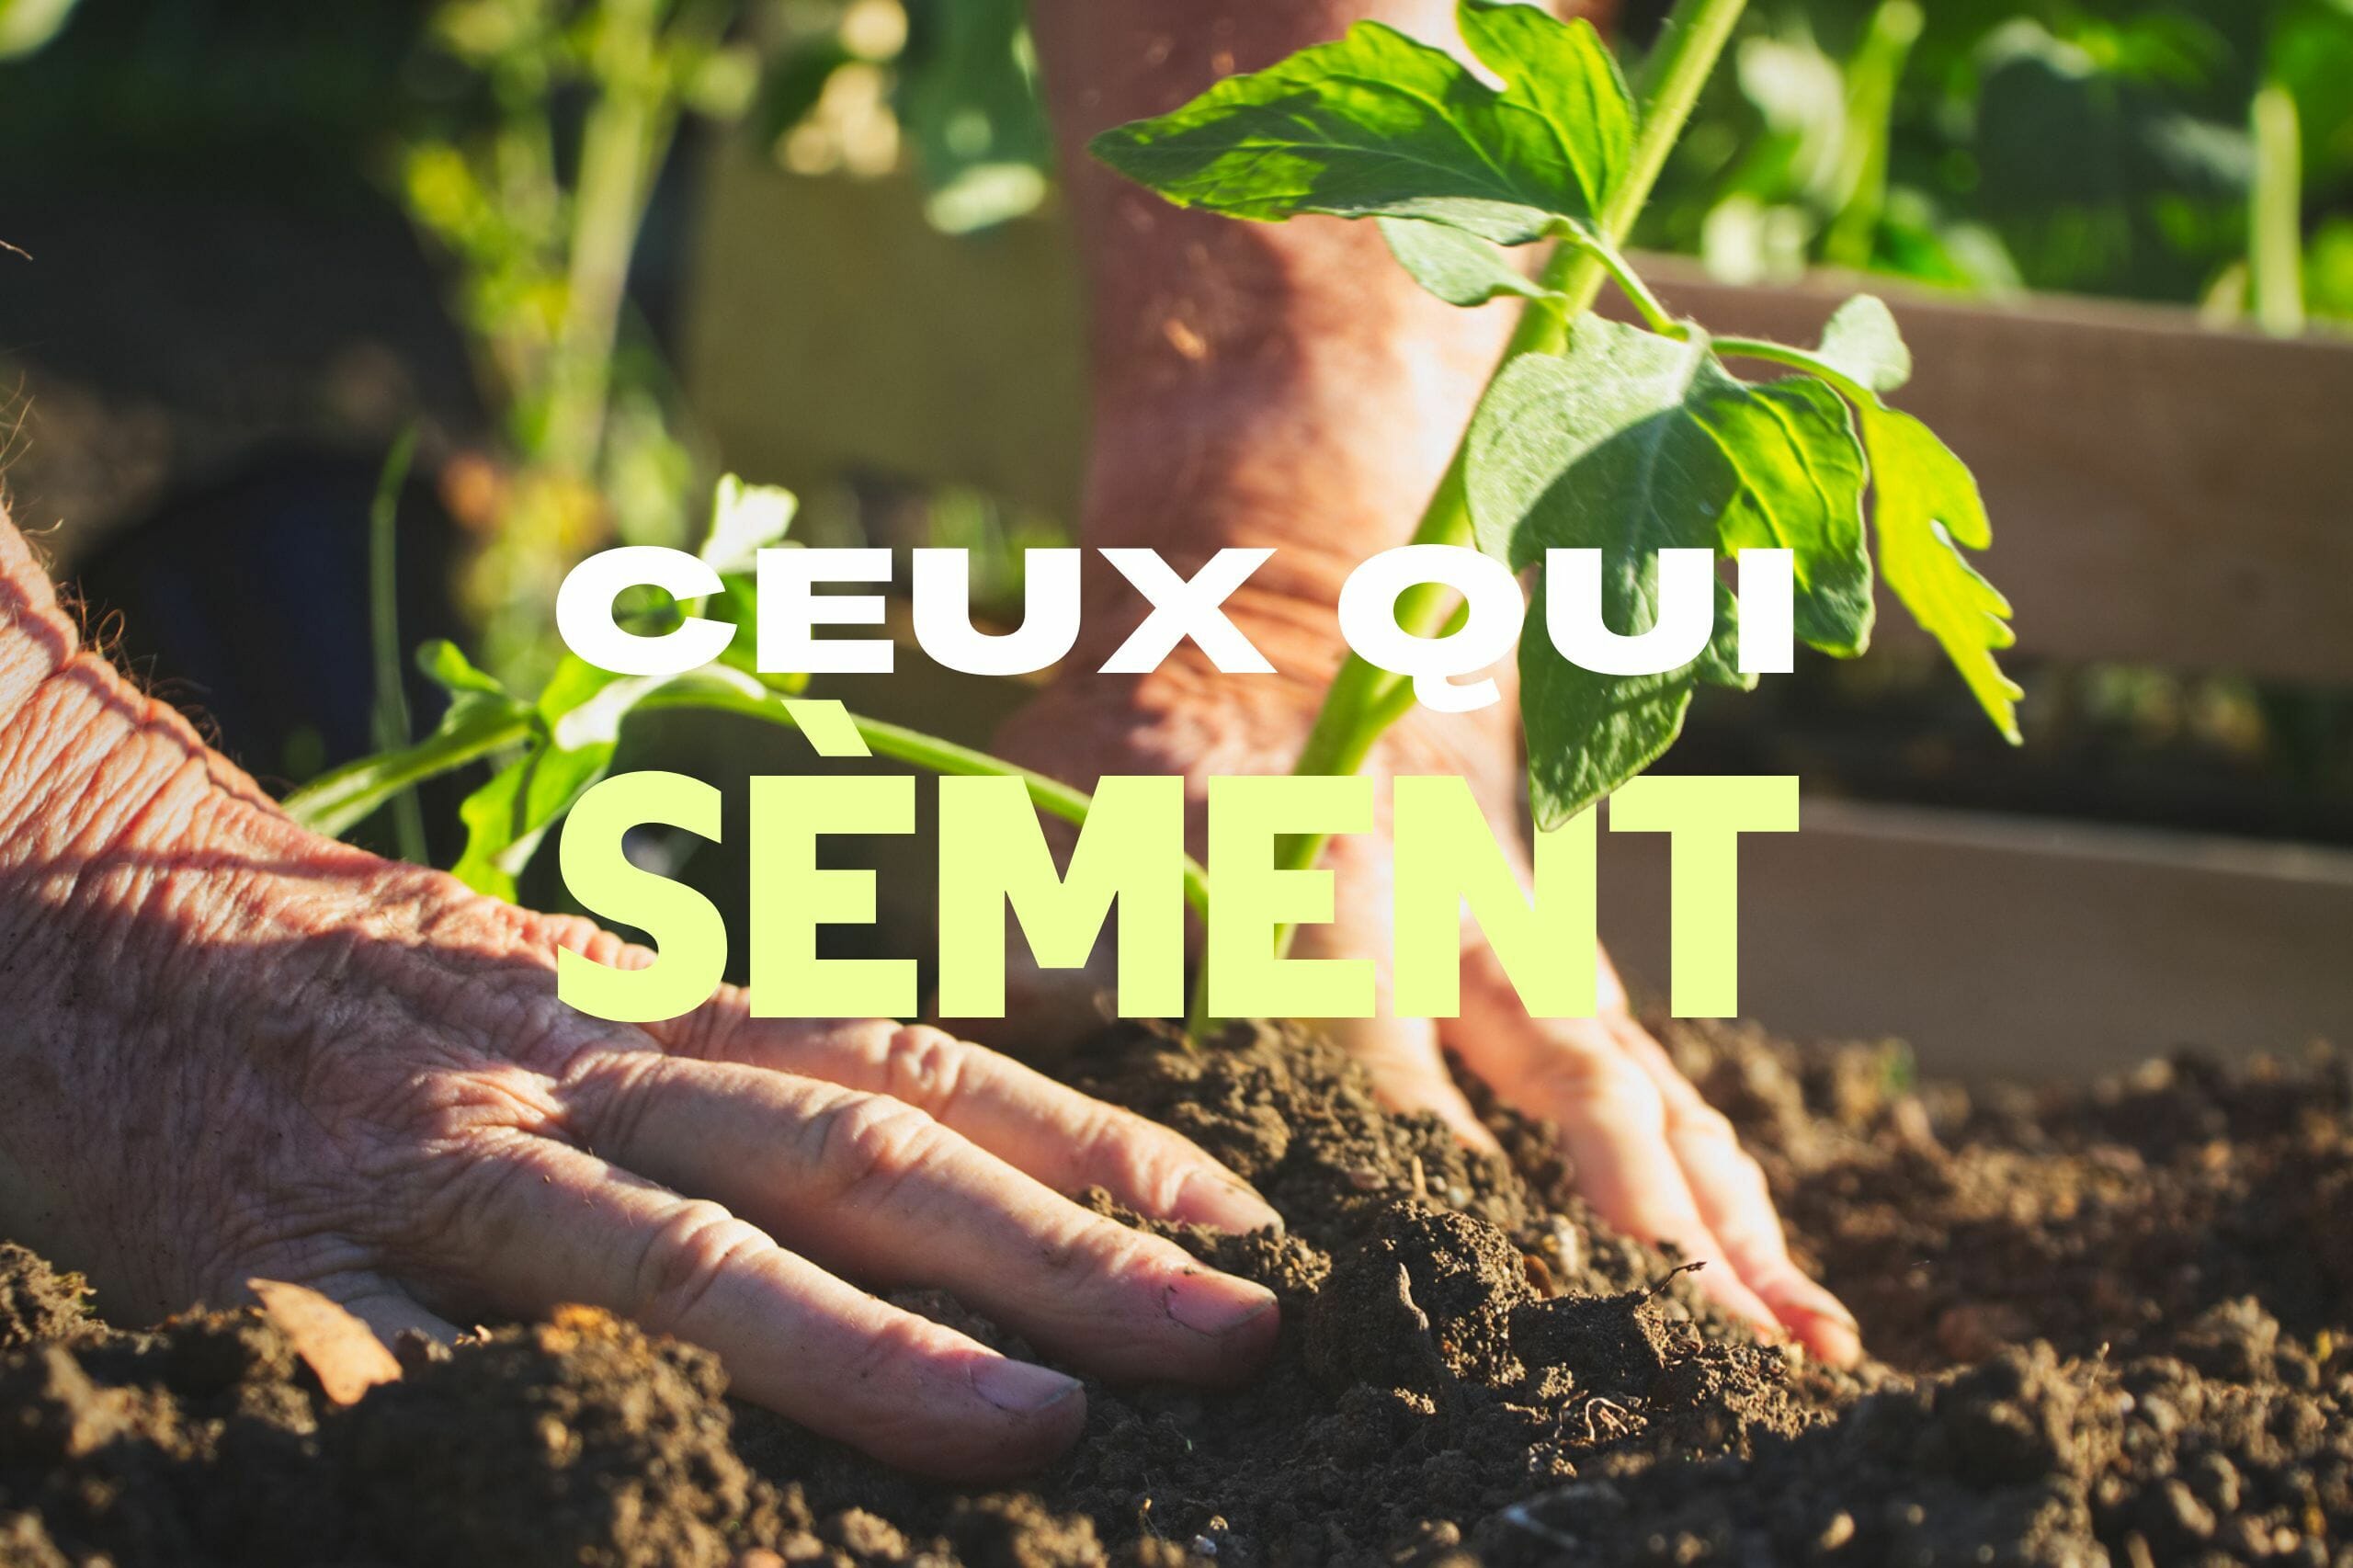 CEUX QUI SEMENT  : Stage permaculture et agroécologie à la ferme près de Paris